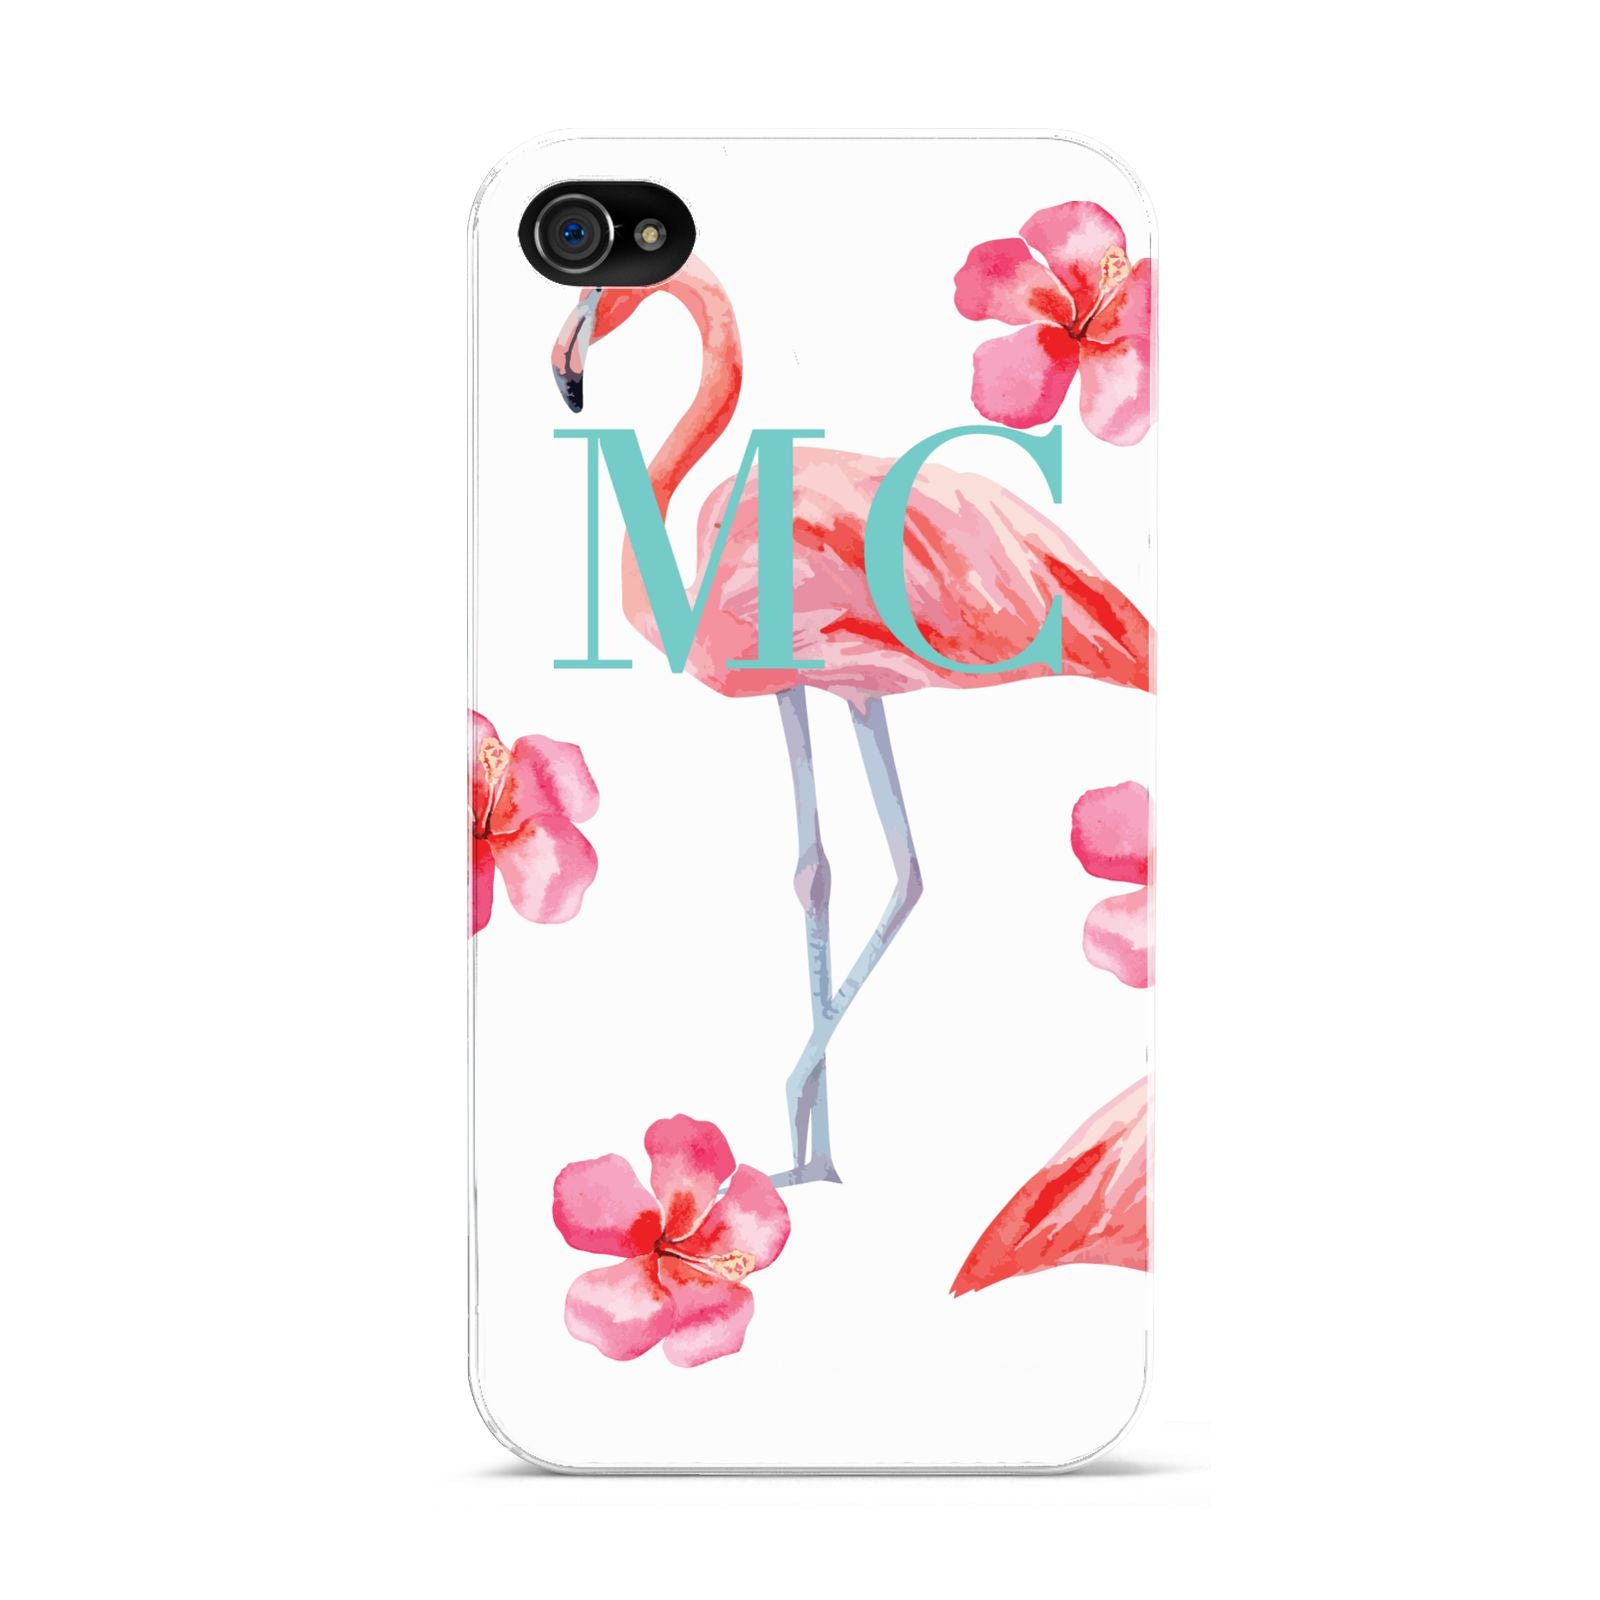 Personalised Initials Flamingo 3 Apple iPhone 4s Case